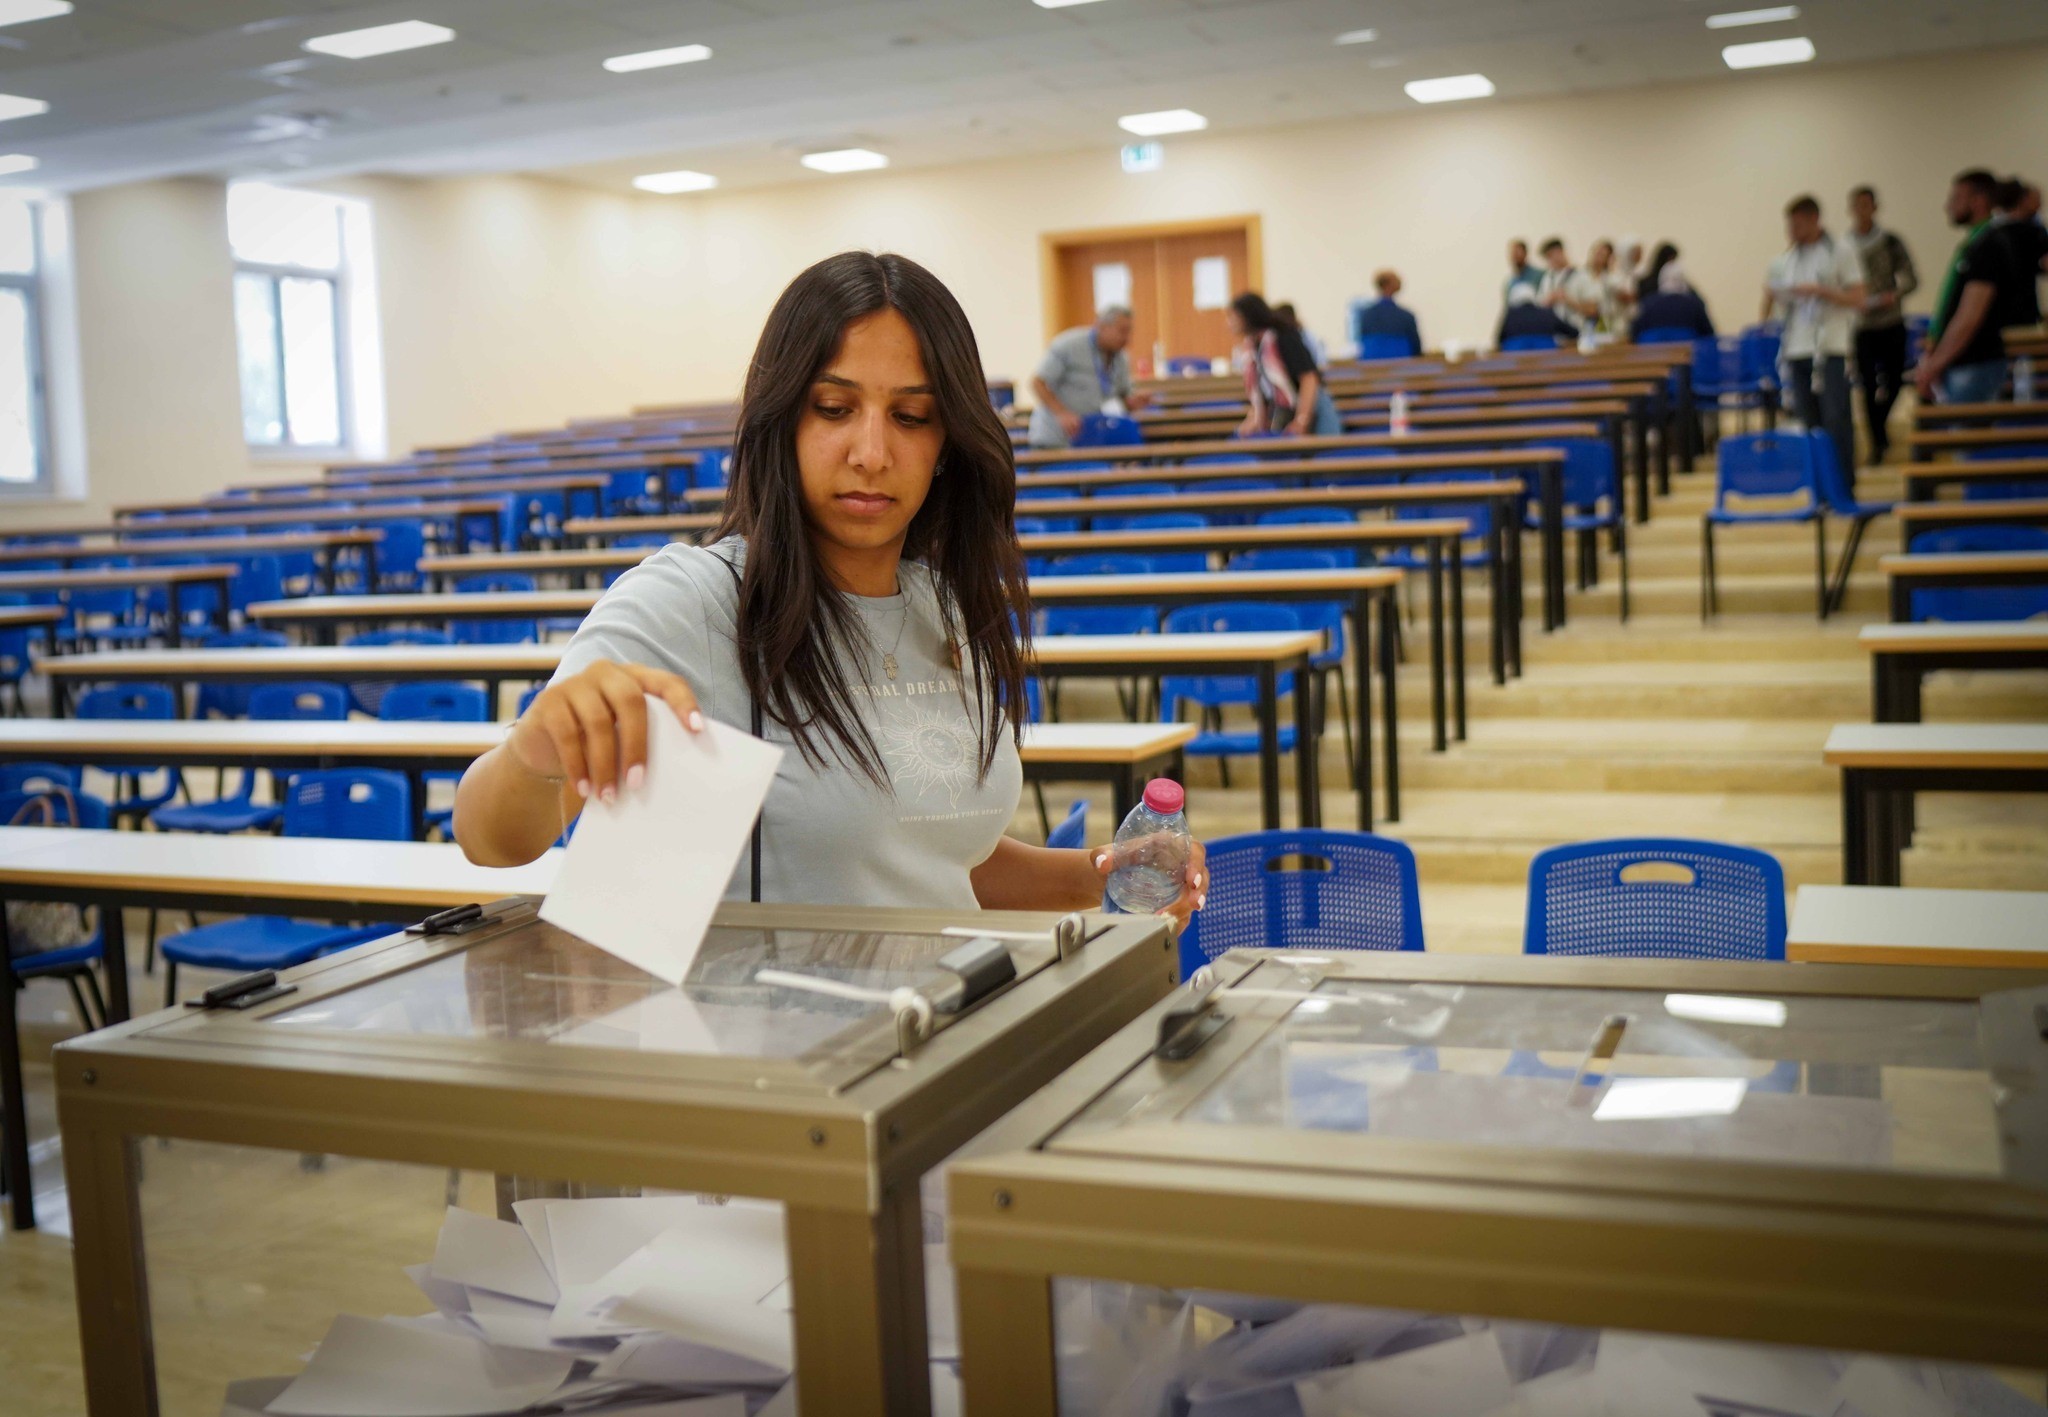 طالع: النتائج الأولية لانتخابات مجلس الطلبة في جامعة بيرزيت